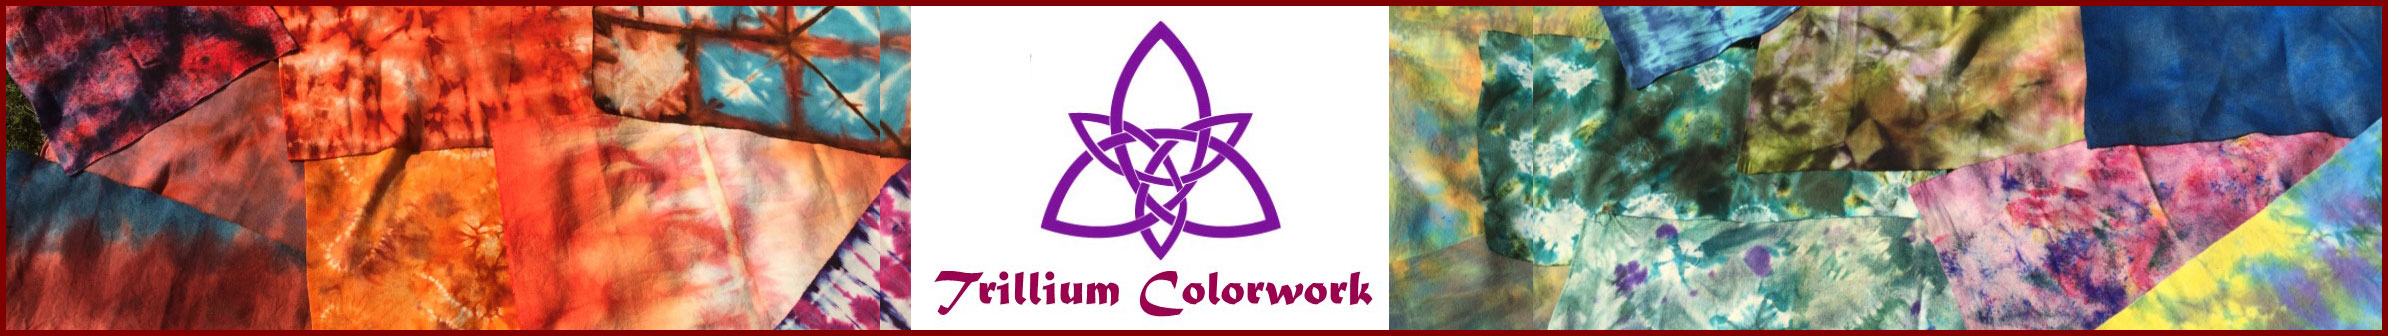 Trillium Colorwork